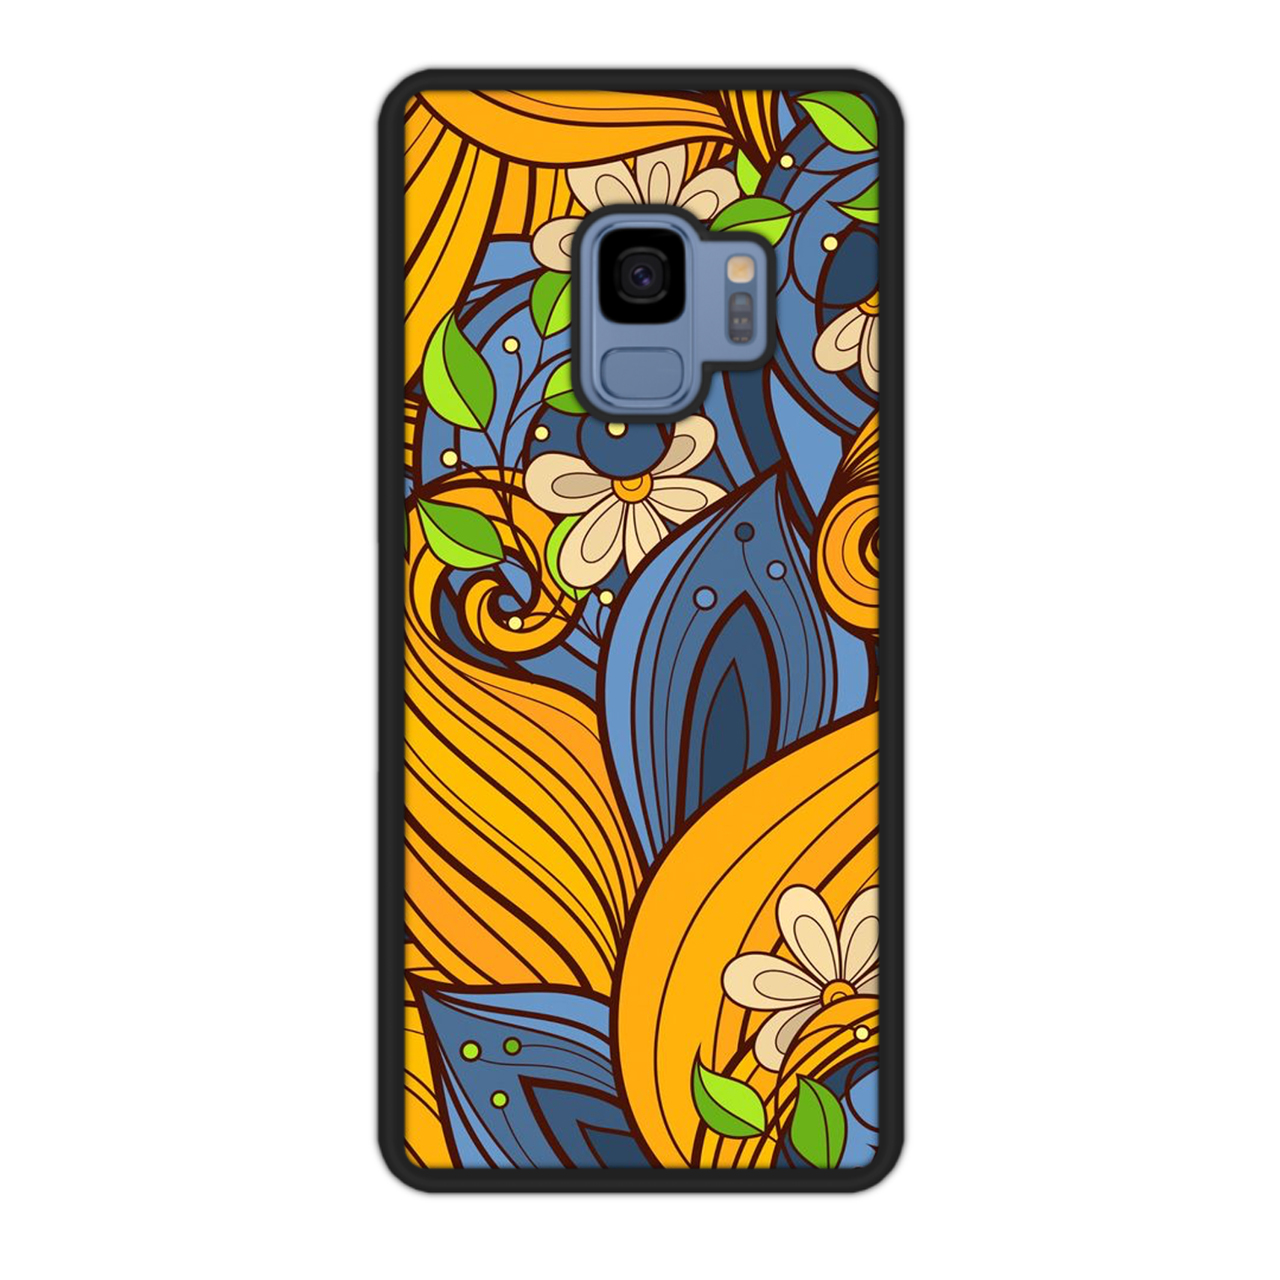 کاور آکام مدل AMCAS92218 مناسب برای گوشی موبایل سامسونگ Galaxy S9